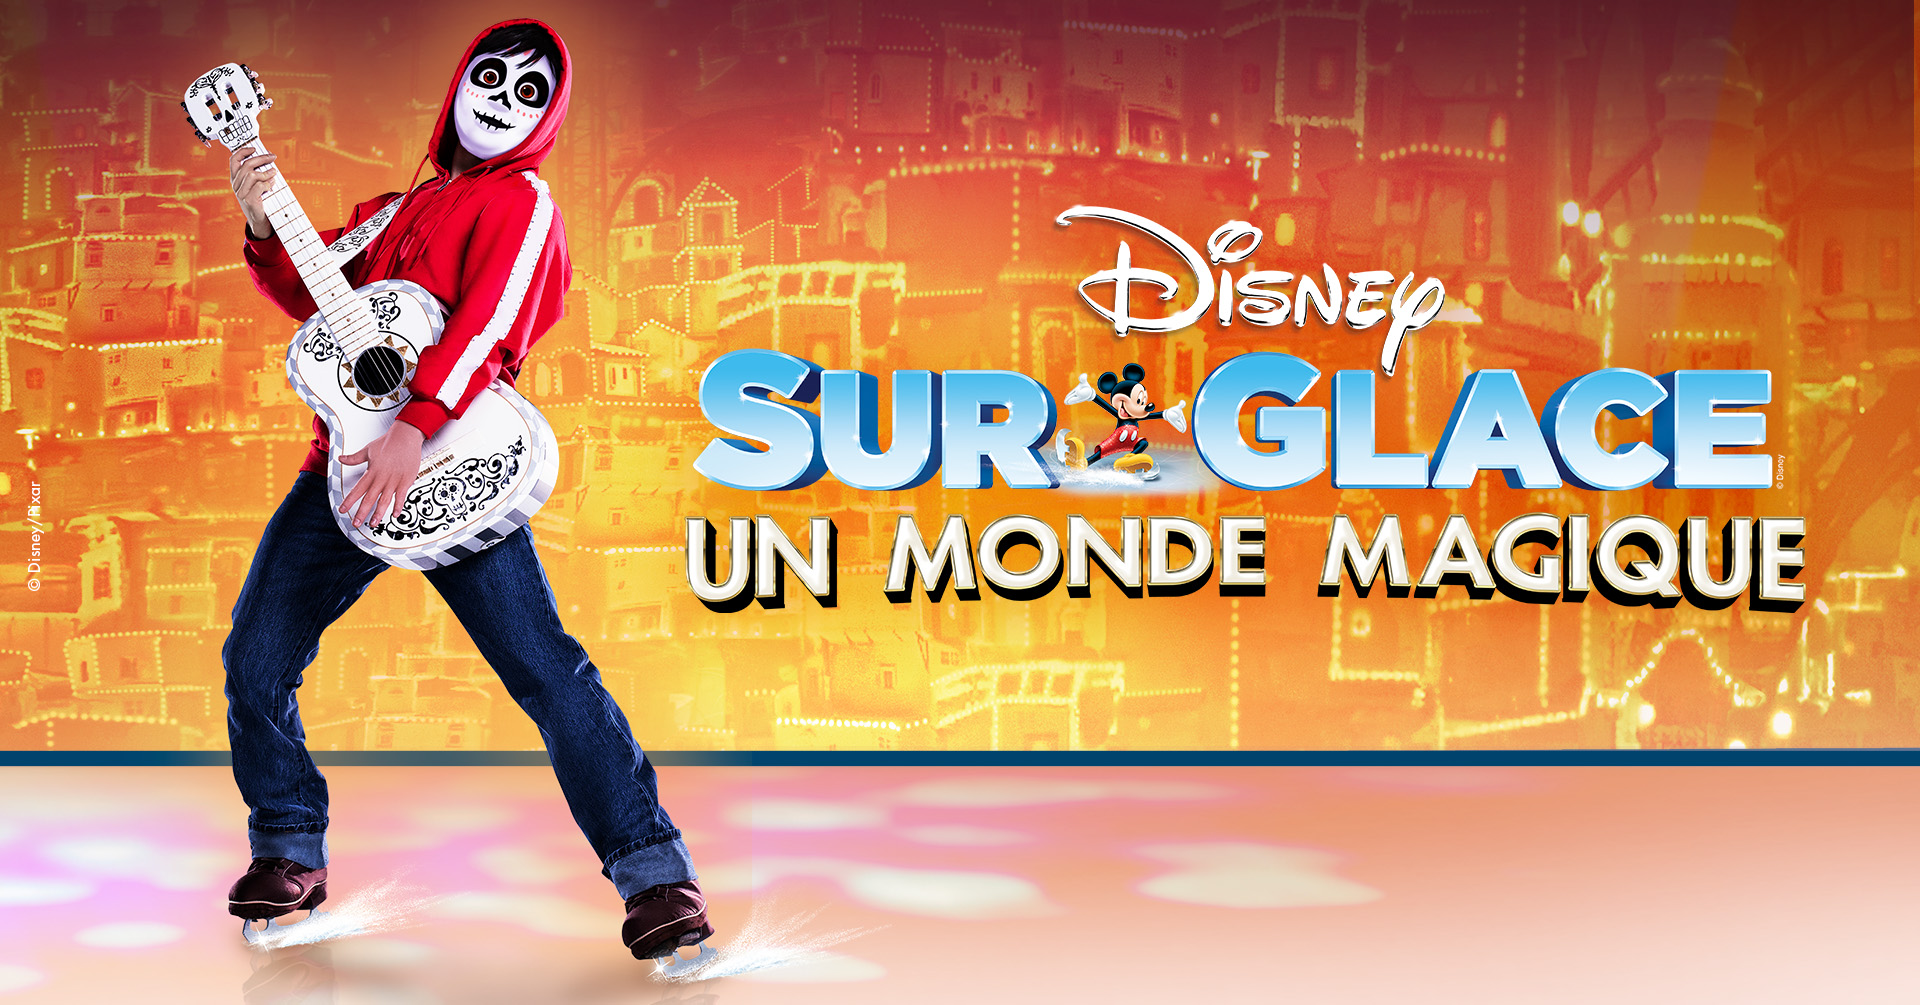 Célébrez la magie du courage, de l’amour et de l’aventure grâce au spectacle Un monde magique de Disney sur glace